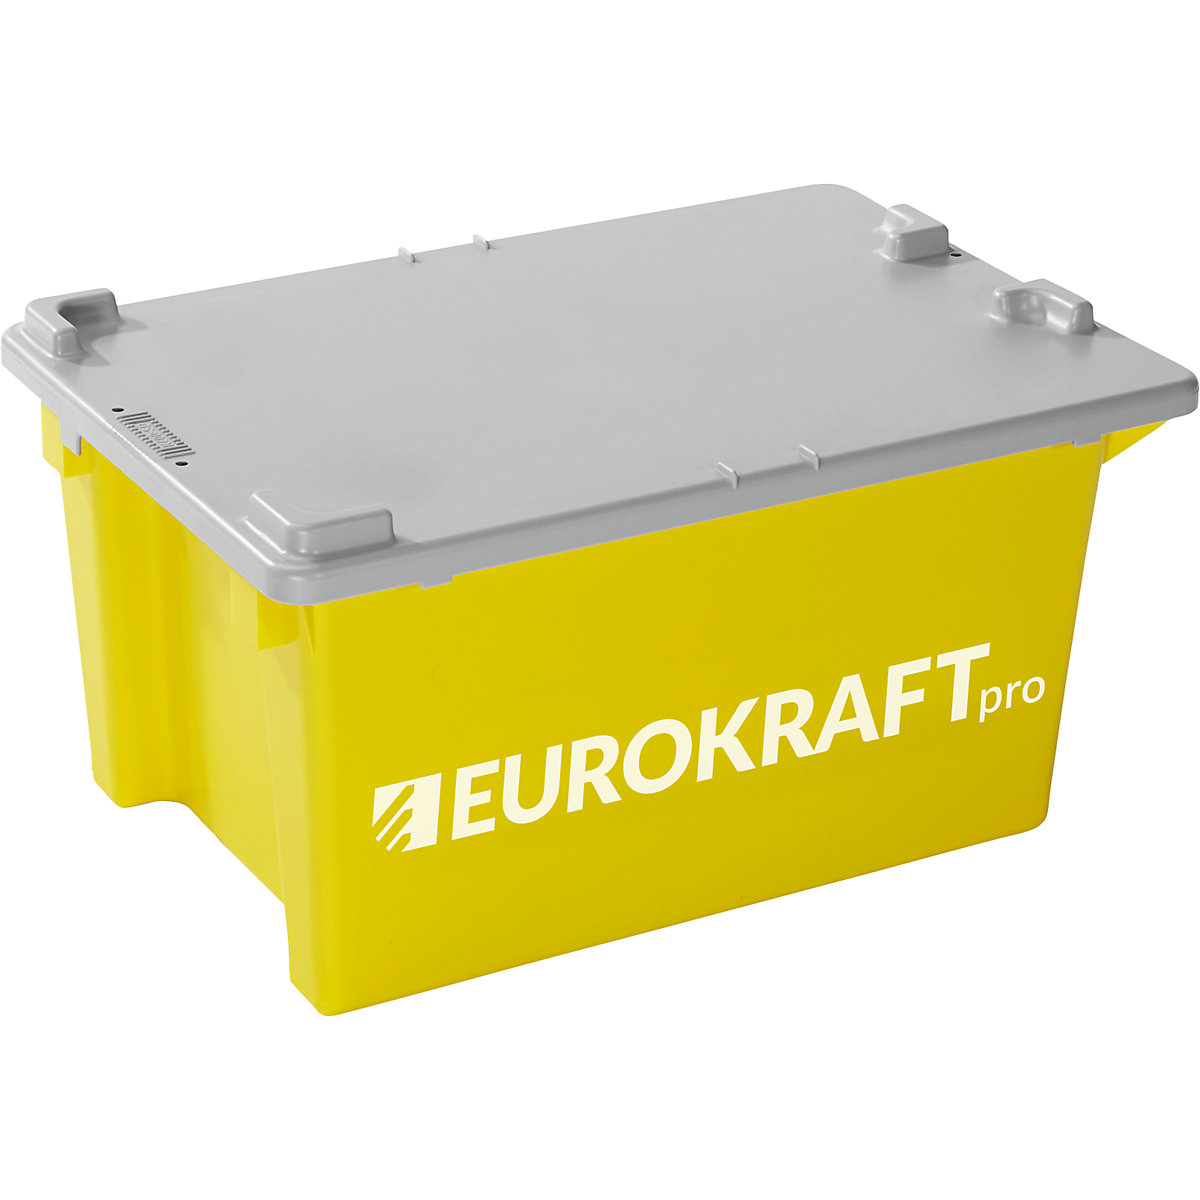 EUROKRAFTpro – Recipiente empilhável giratório (Imagem do produto 5)